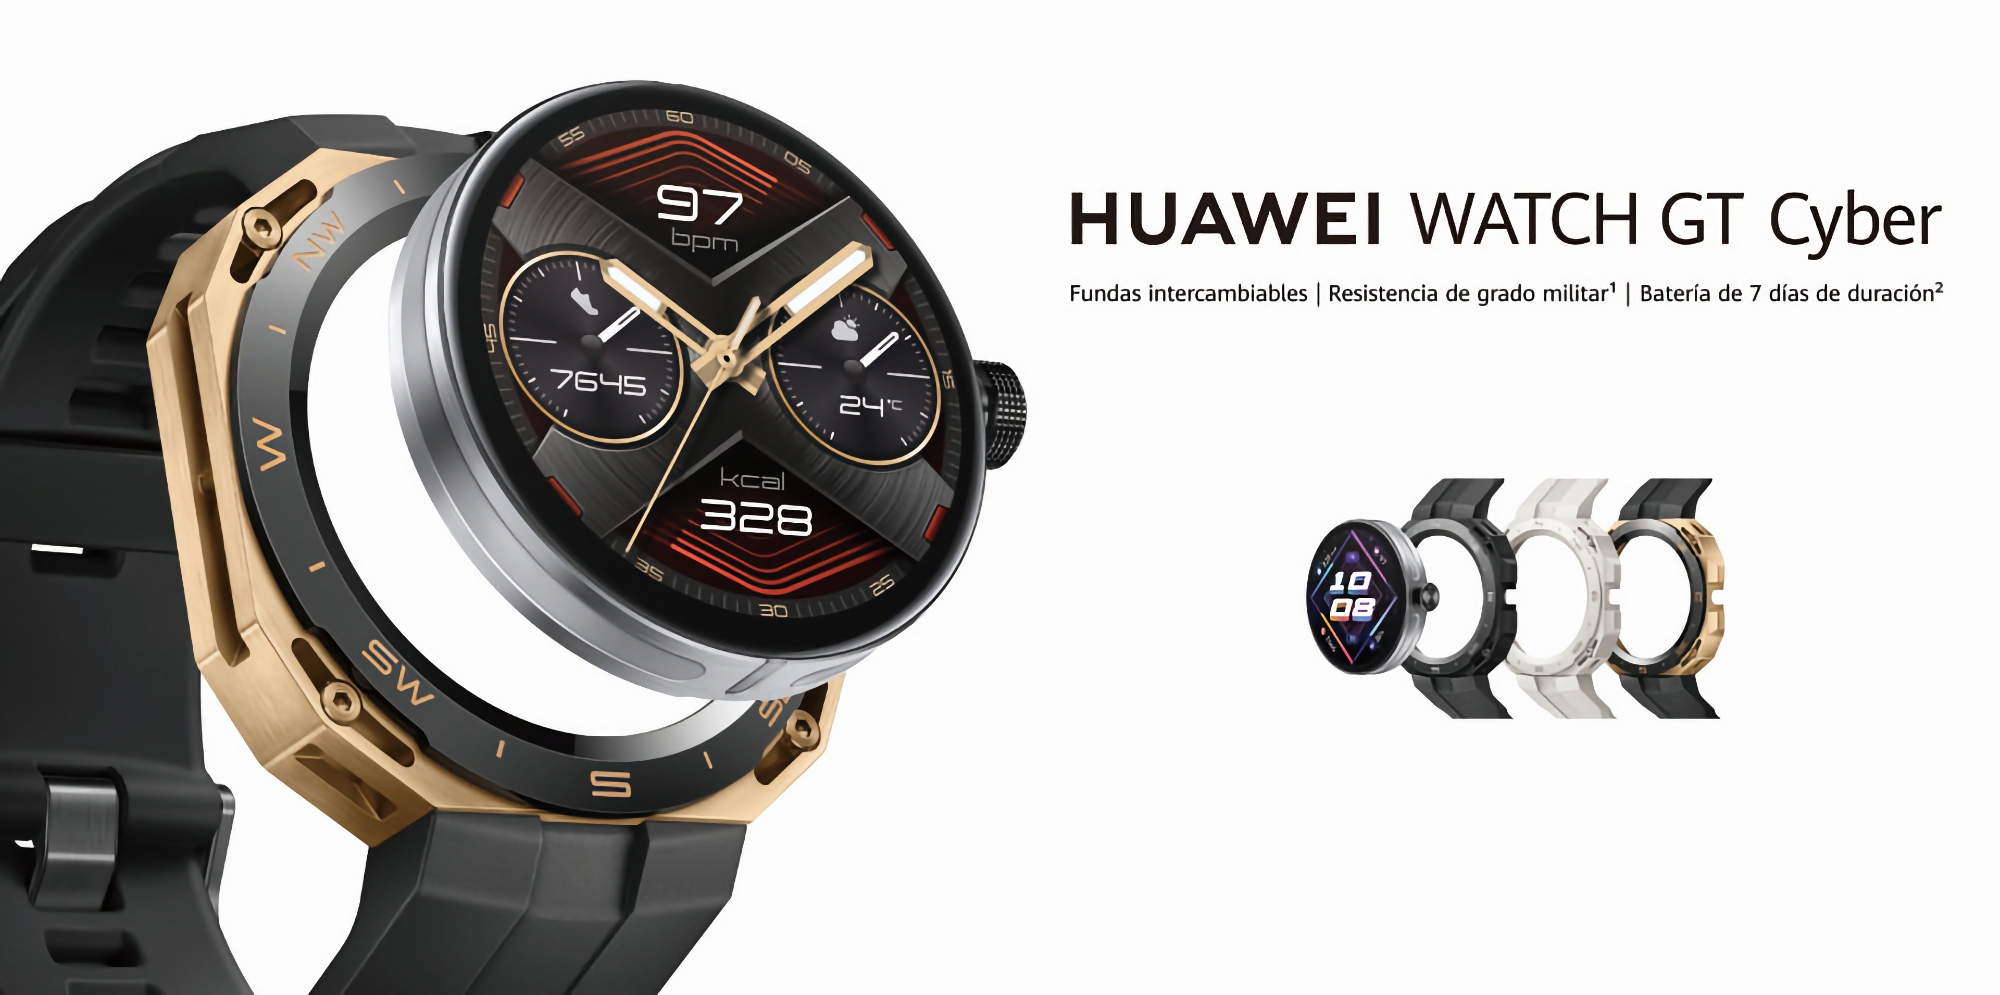 Die Huawei Watch GT Cyber Smartwatch mit abnehmbarem Ziffernblatt hat ihr Debüt außerhalb von China gegeben